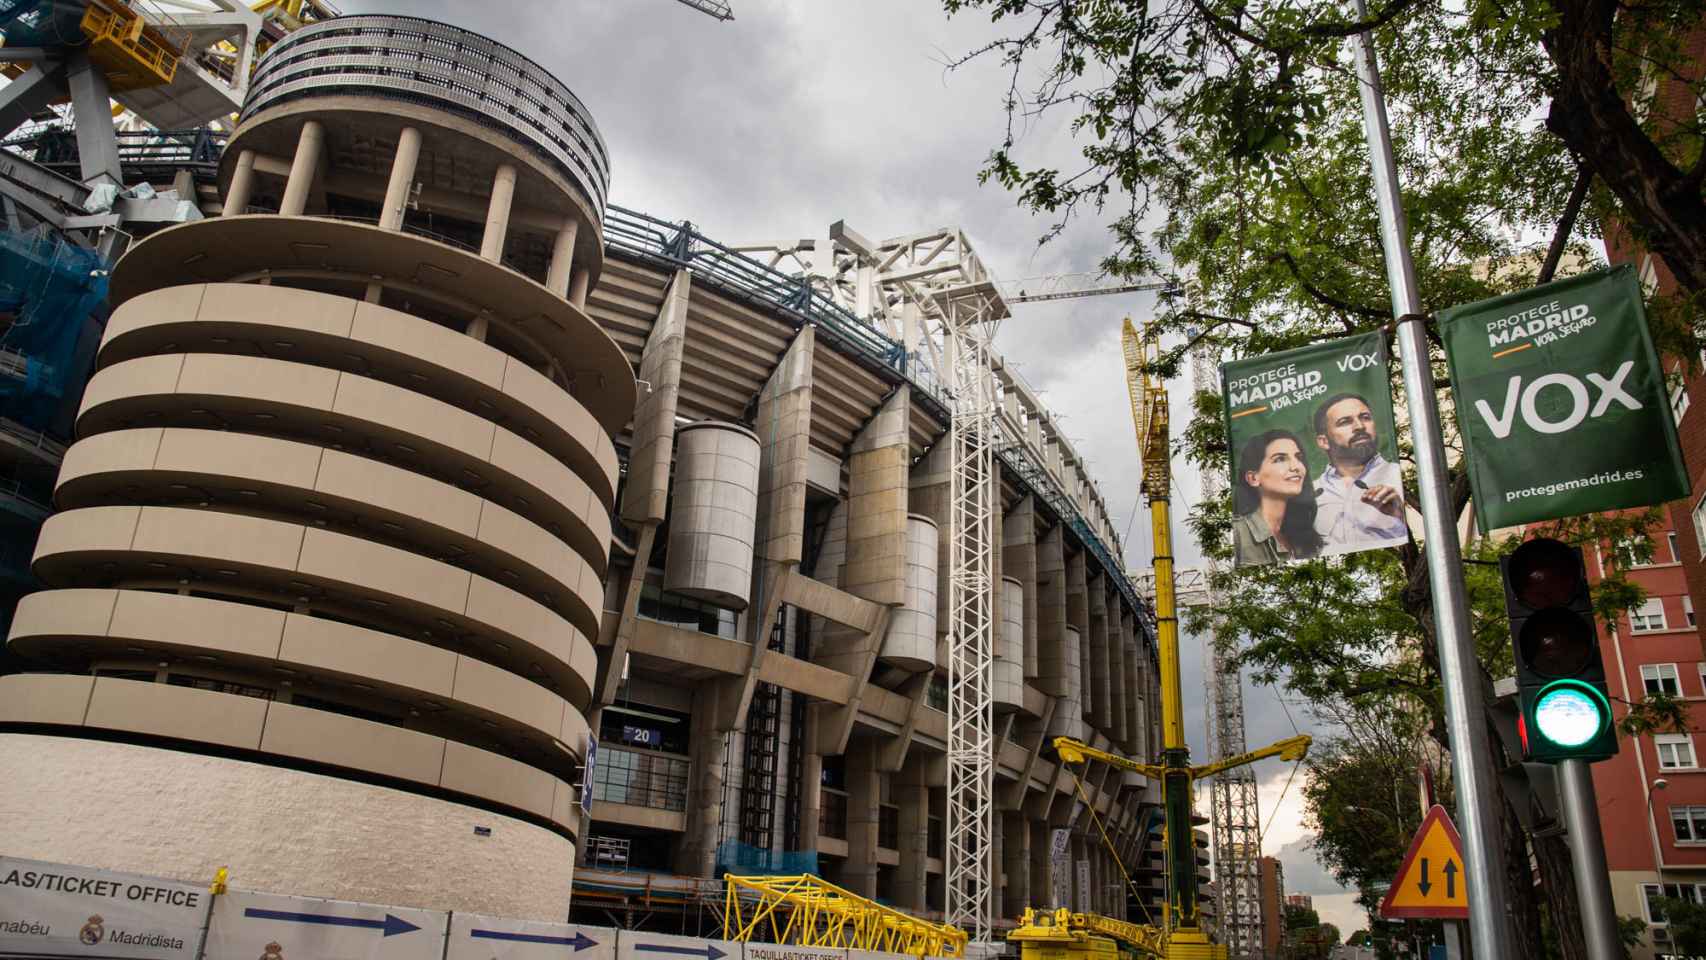 El estadio Santiago Bernabéu en obras, con un cartel electoral de Vox.